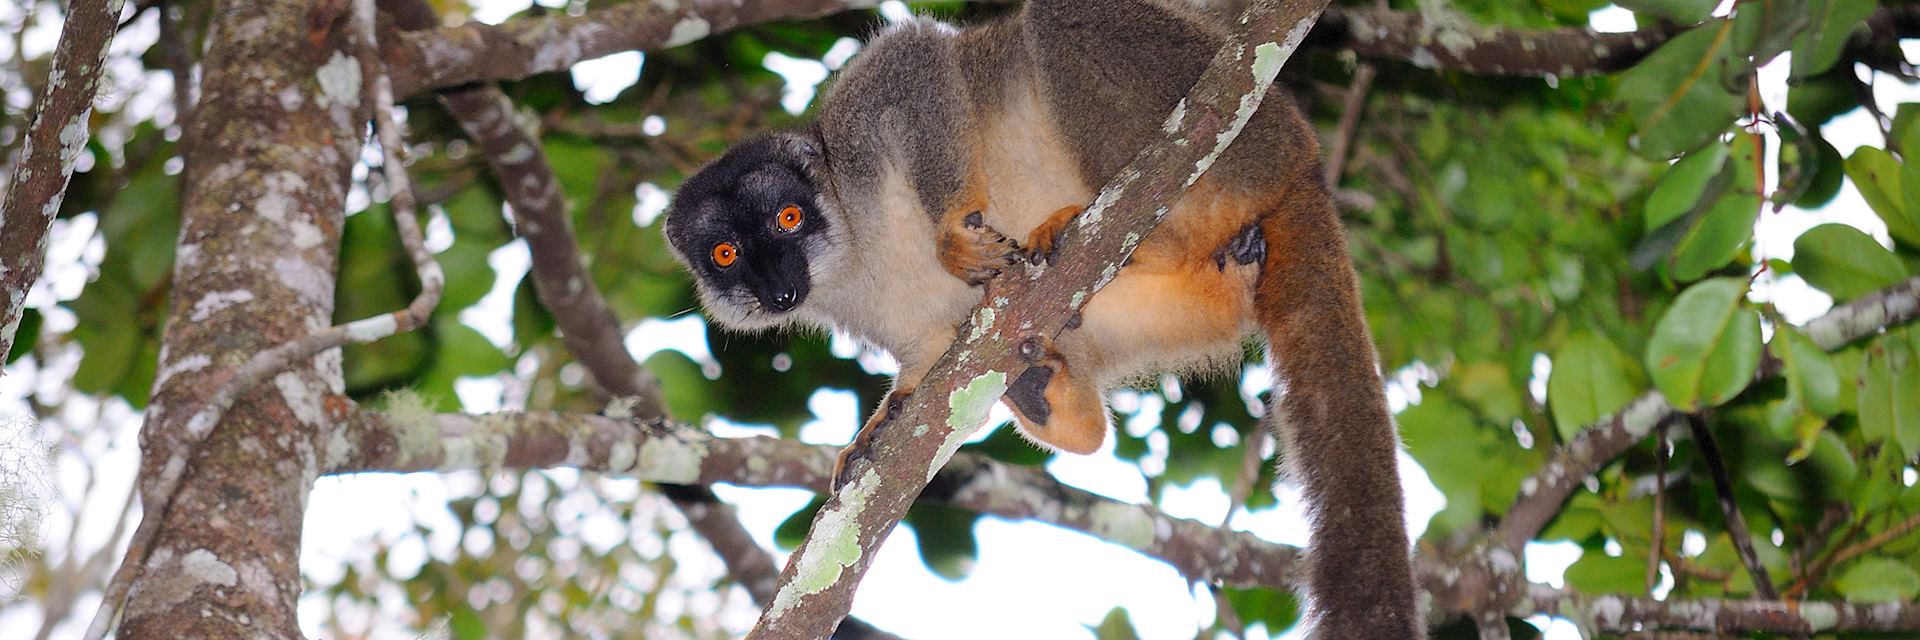 Brown lemur, Andasibe National Park